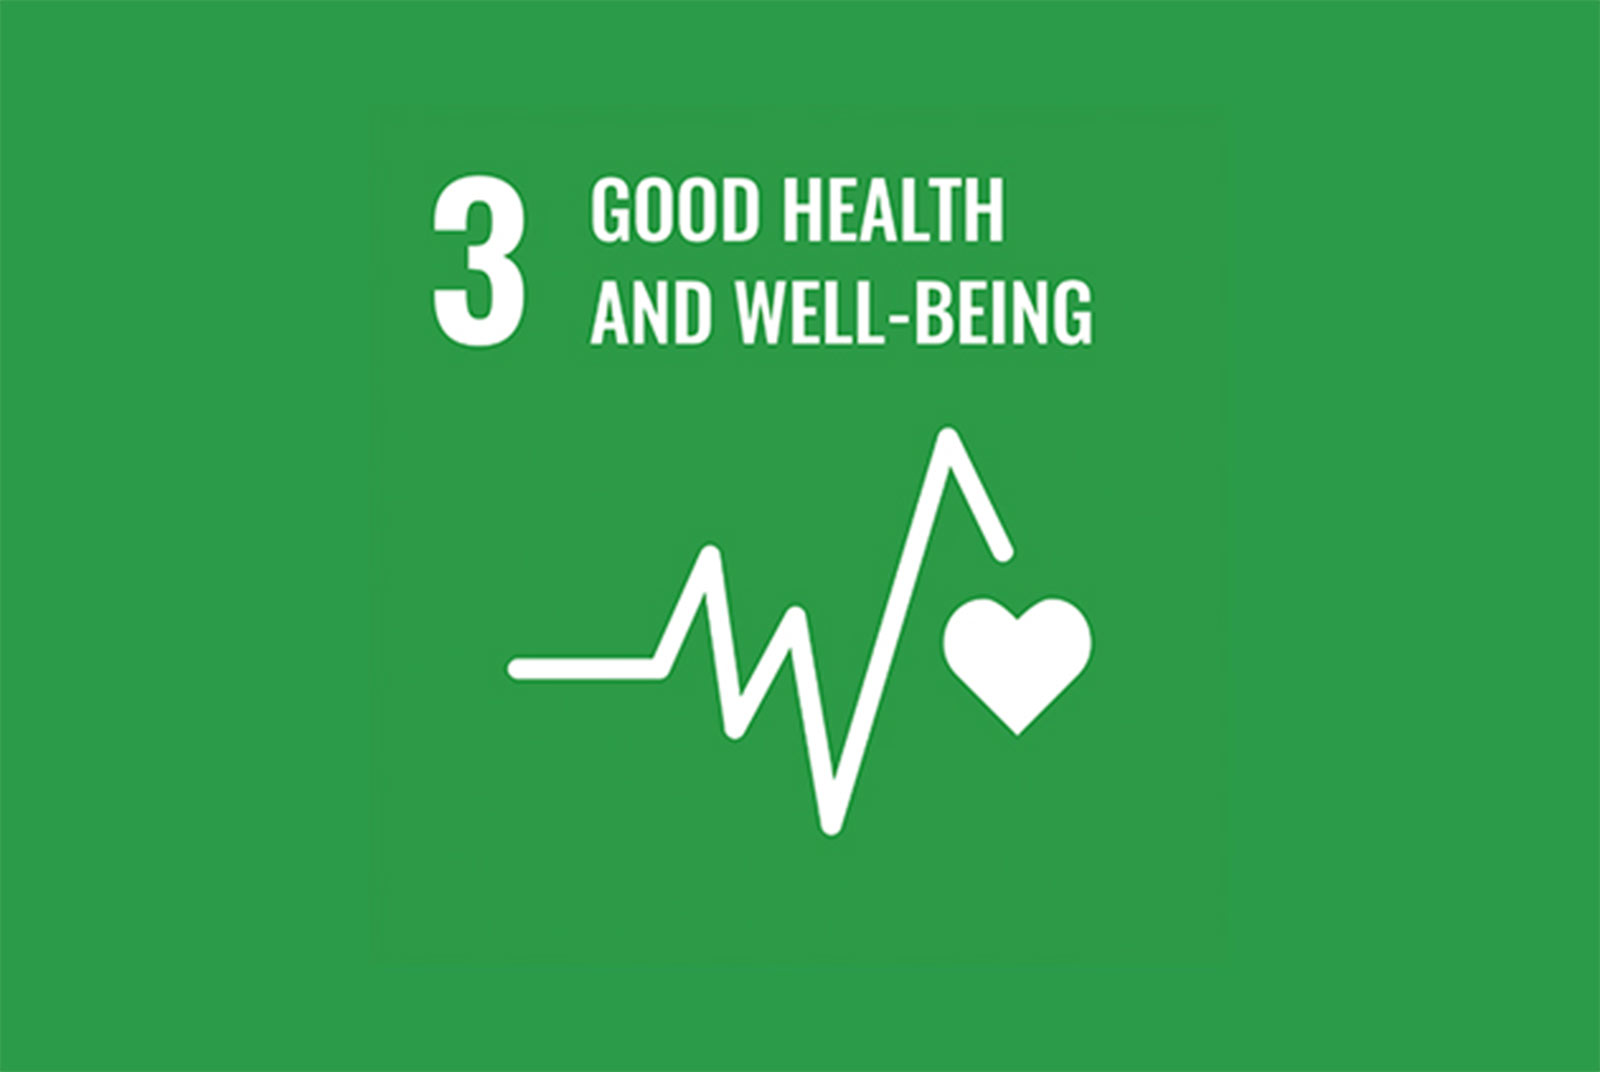 聯合國永續發展目標-SDGs-目標3-細項-實例-健康生活與福祉